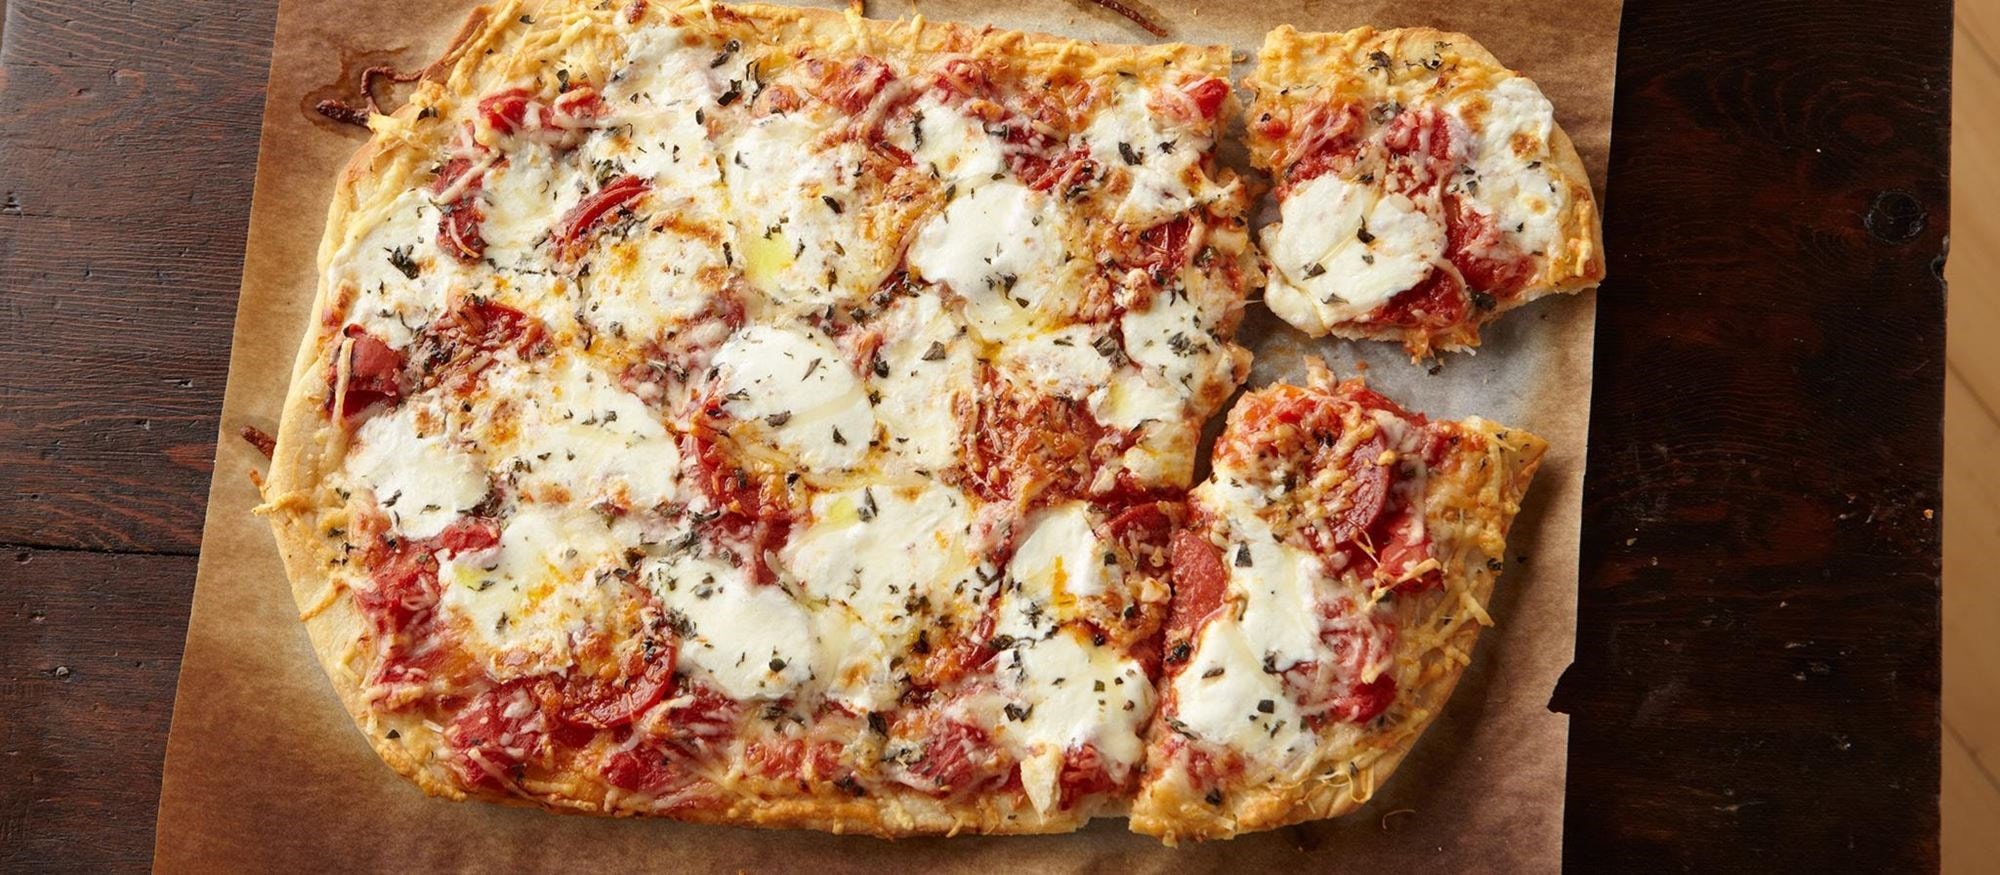 Pizza casera fácil y rápida